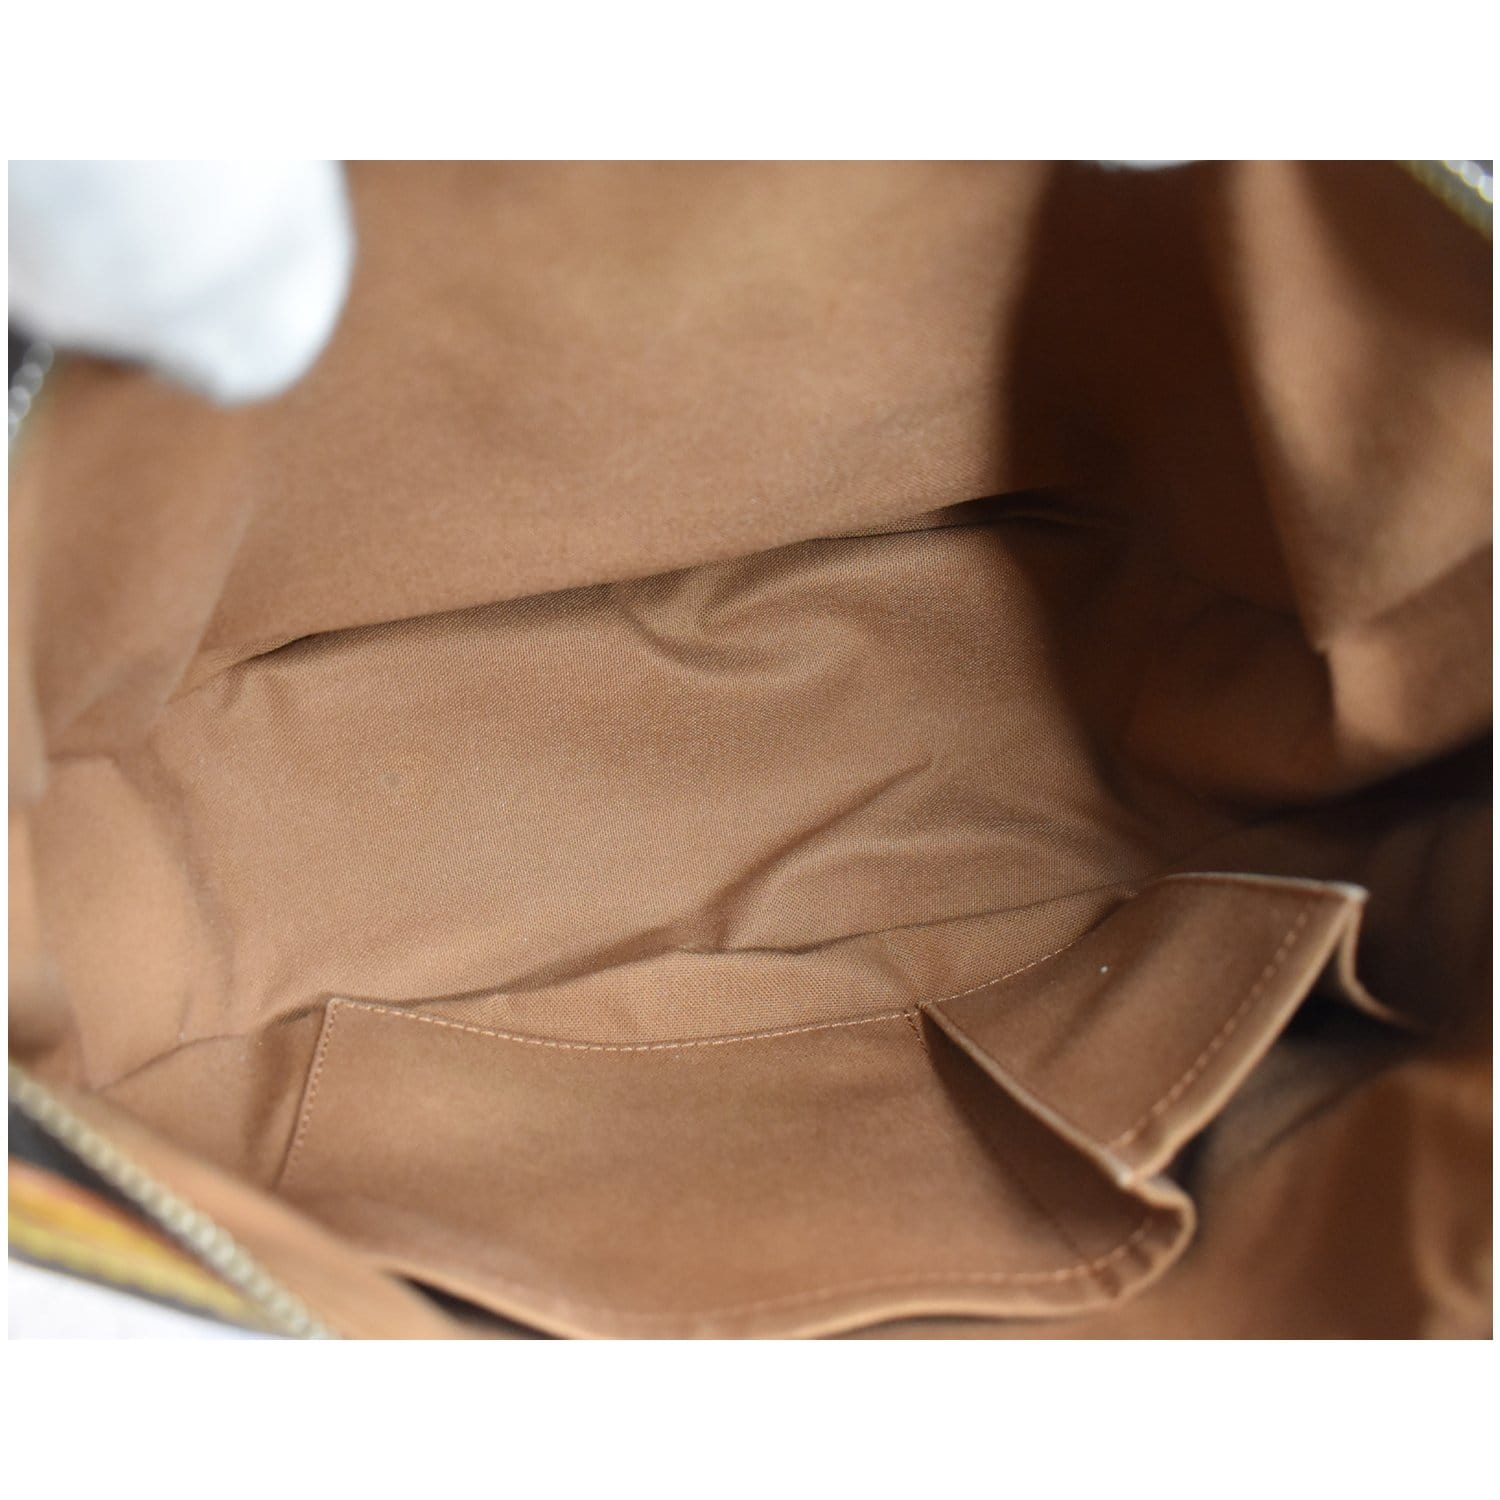 Pre-Owned Louis Vuitton Tulum Monogram PM Shoulder Bag - Excellent  Condition 